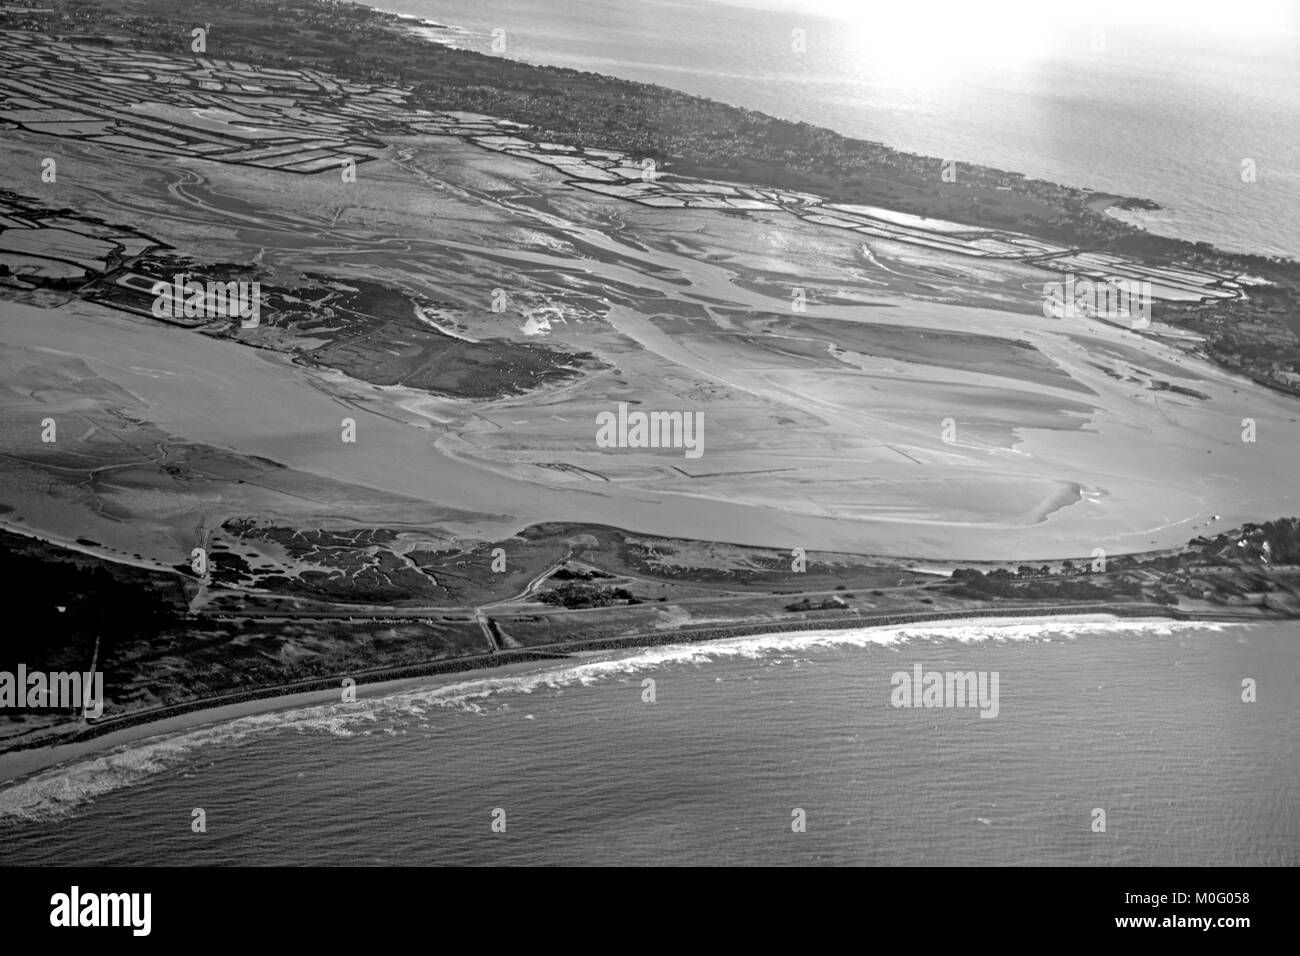 Vista aérea de la costa atlántica y marsh Foto de stock